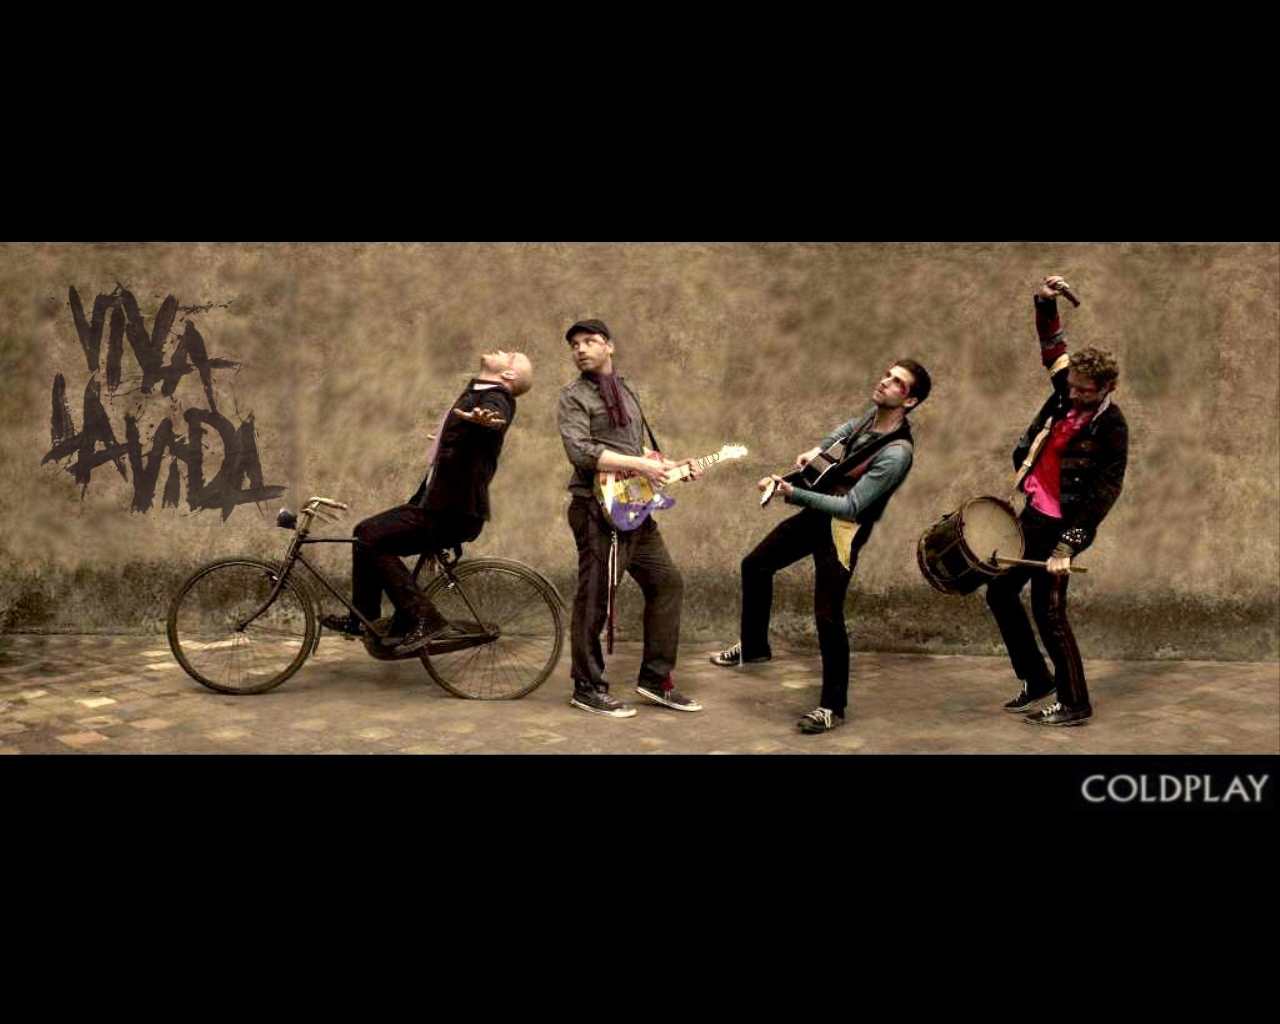 48+] Coldplay Wallpaper HD - WallpaperSafari